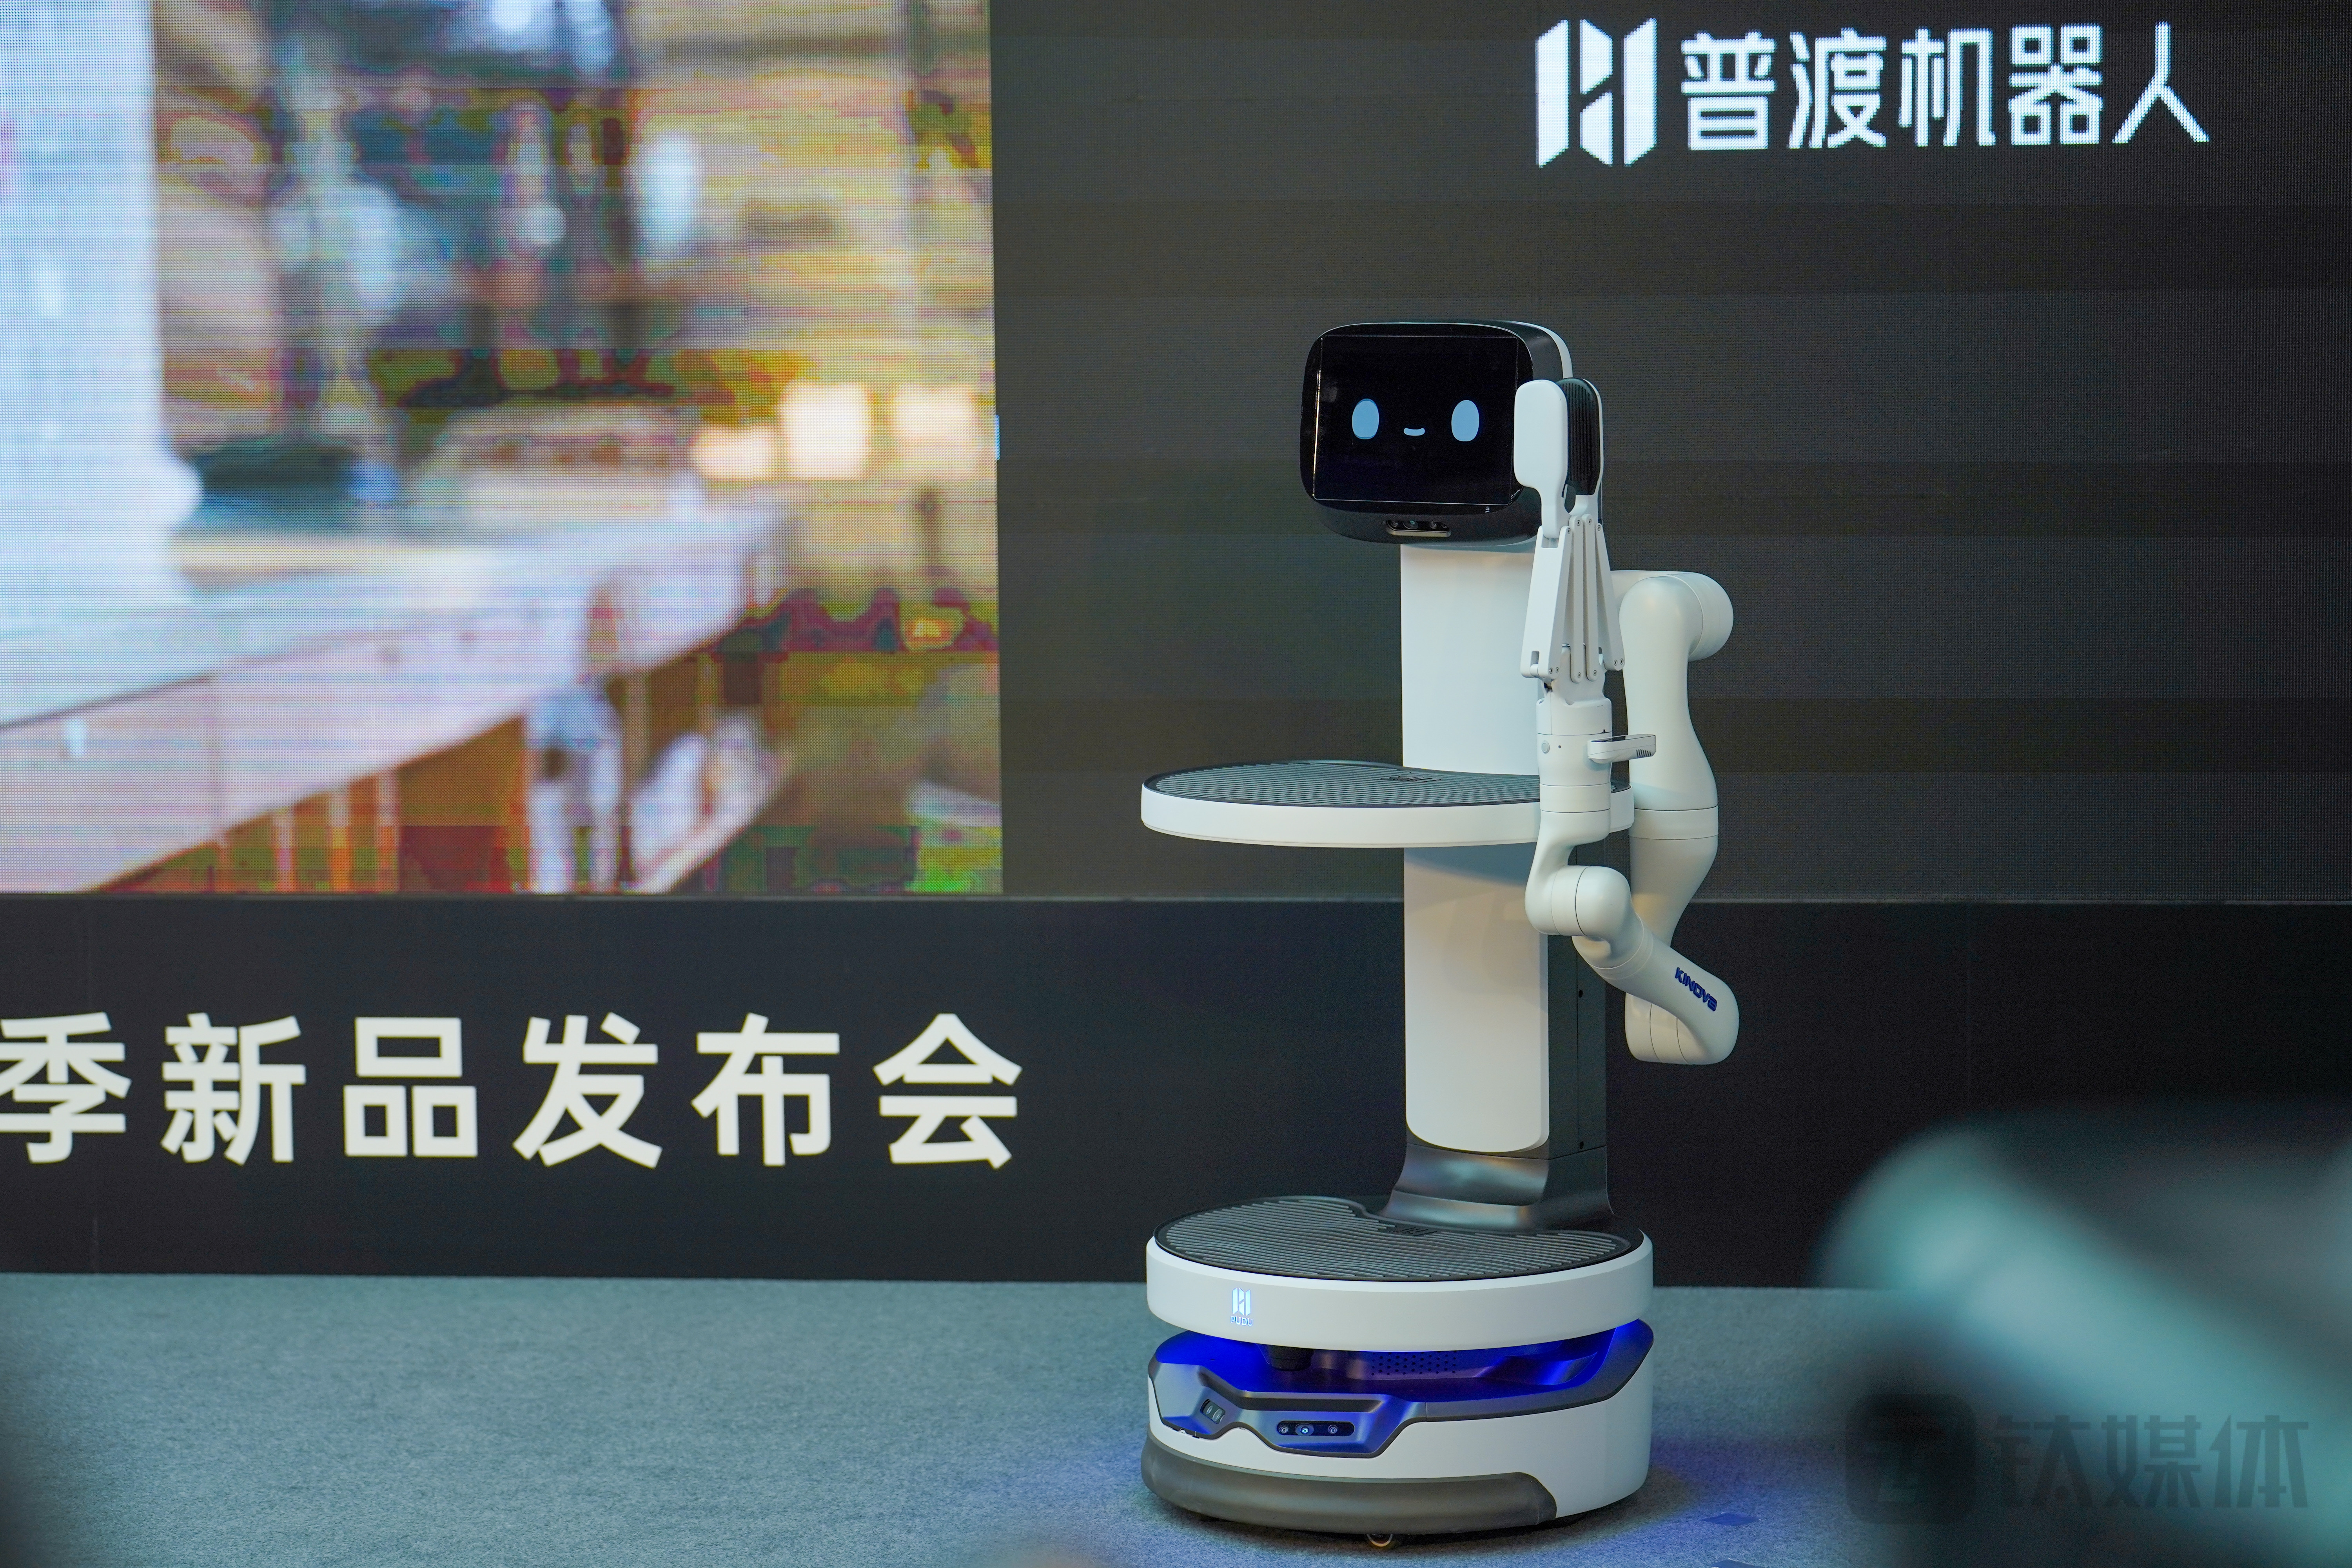 普渡科技发布4款机器人新品,送菜上桌成为现实